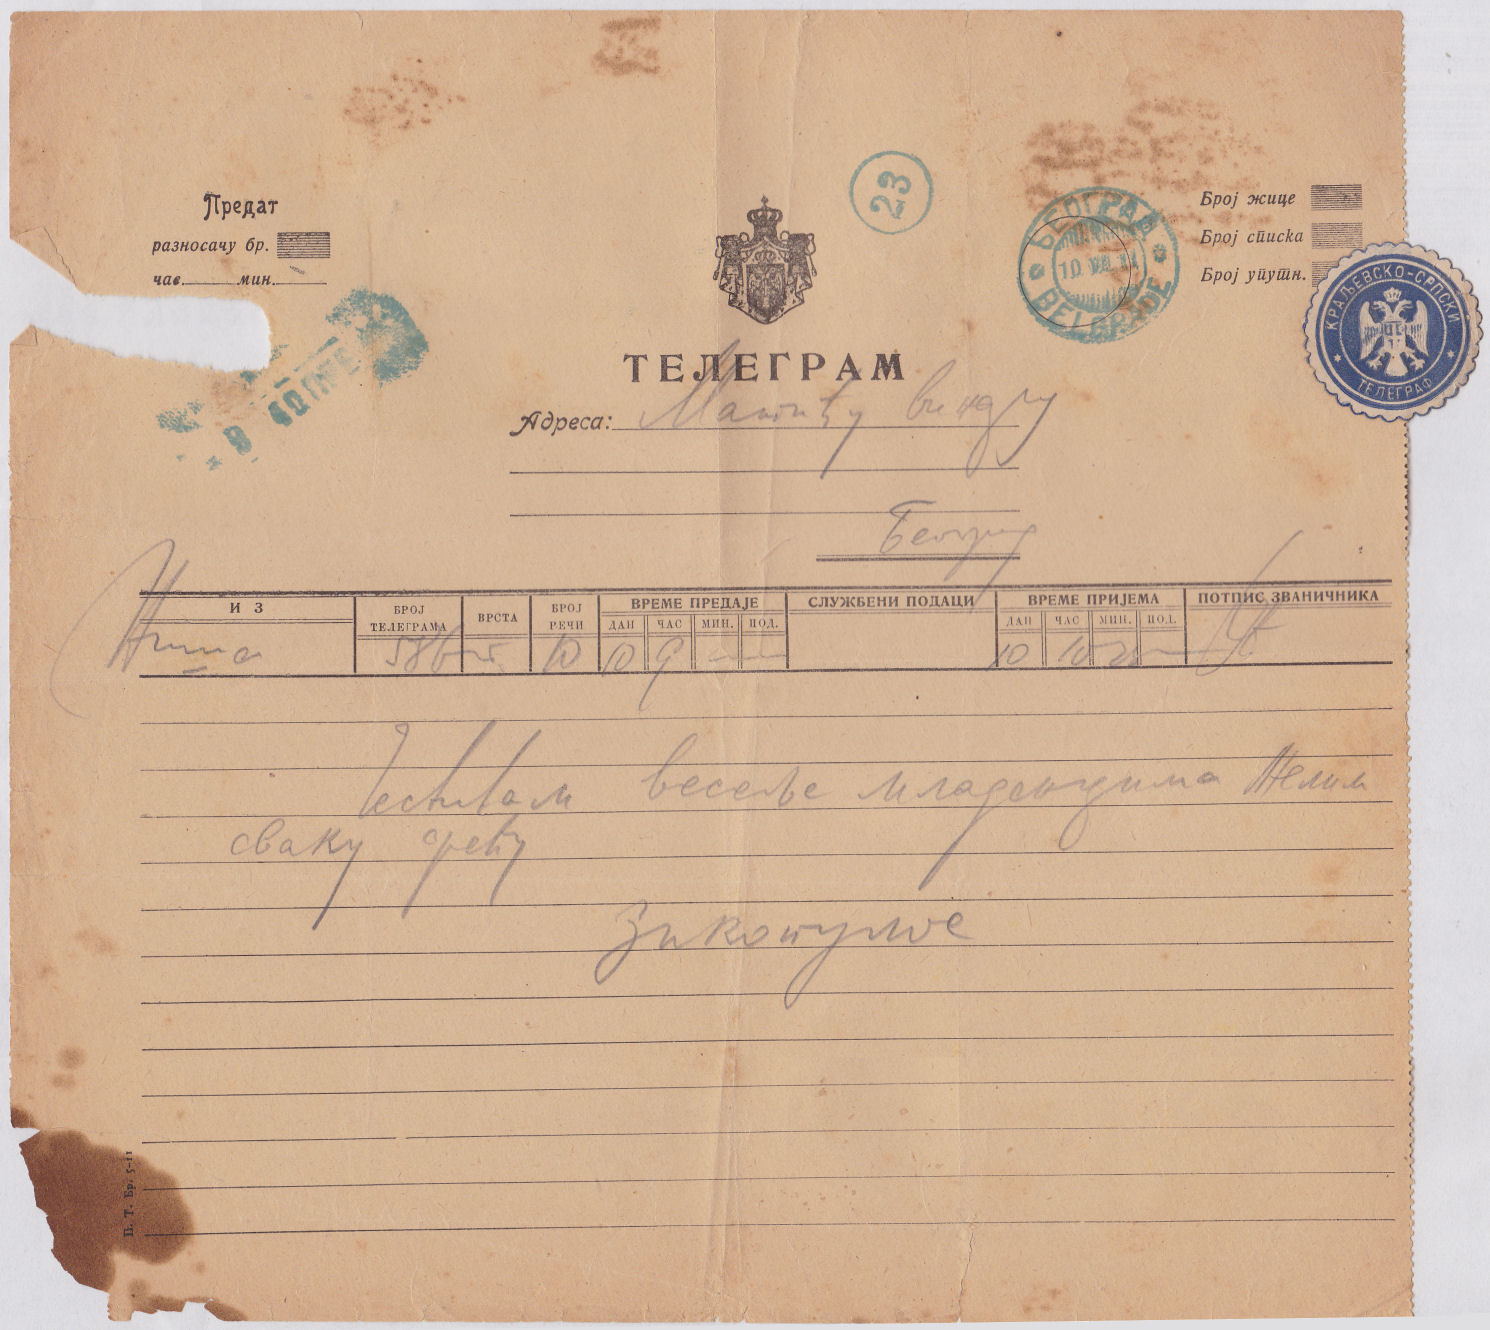 Serbia telegram of 1911